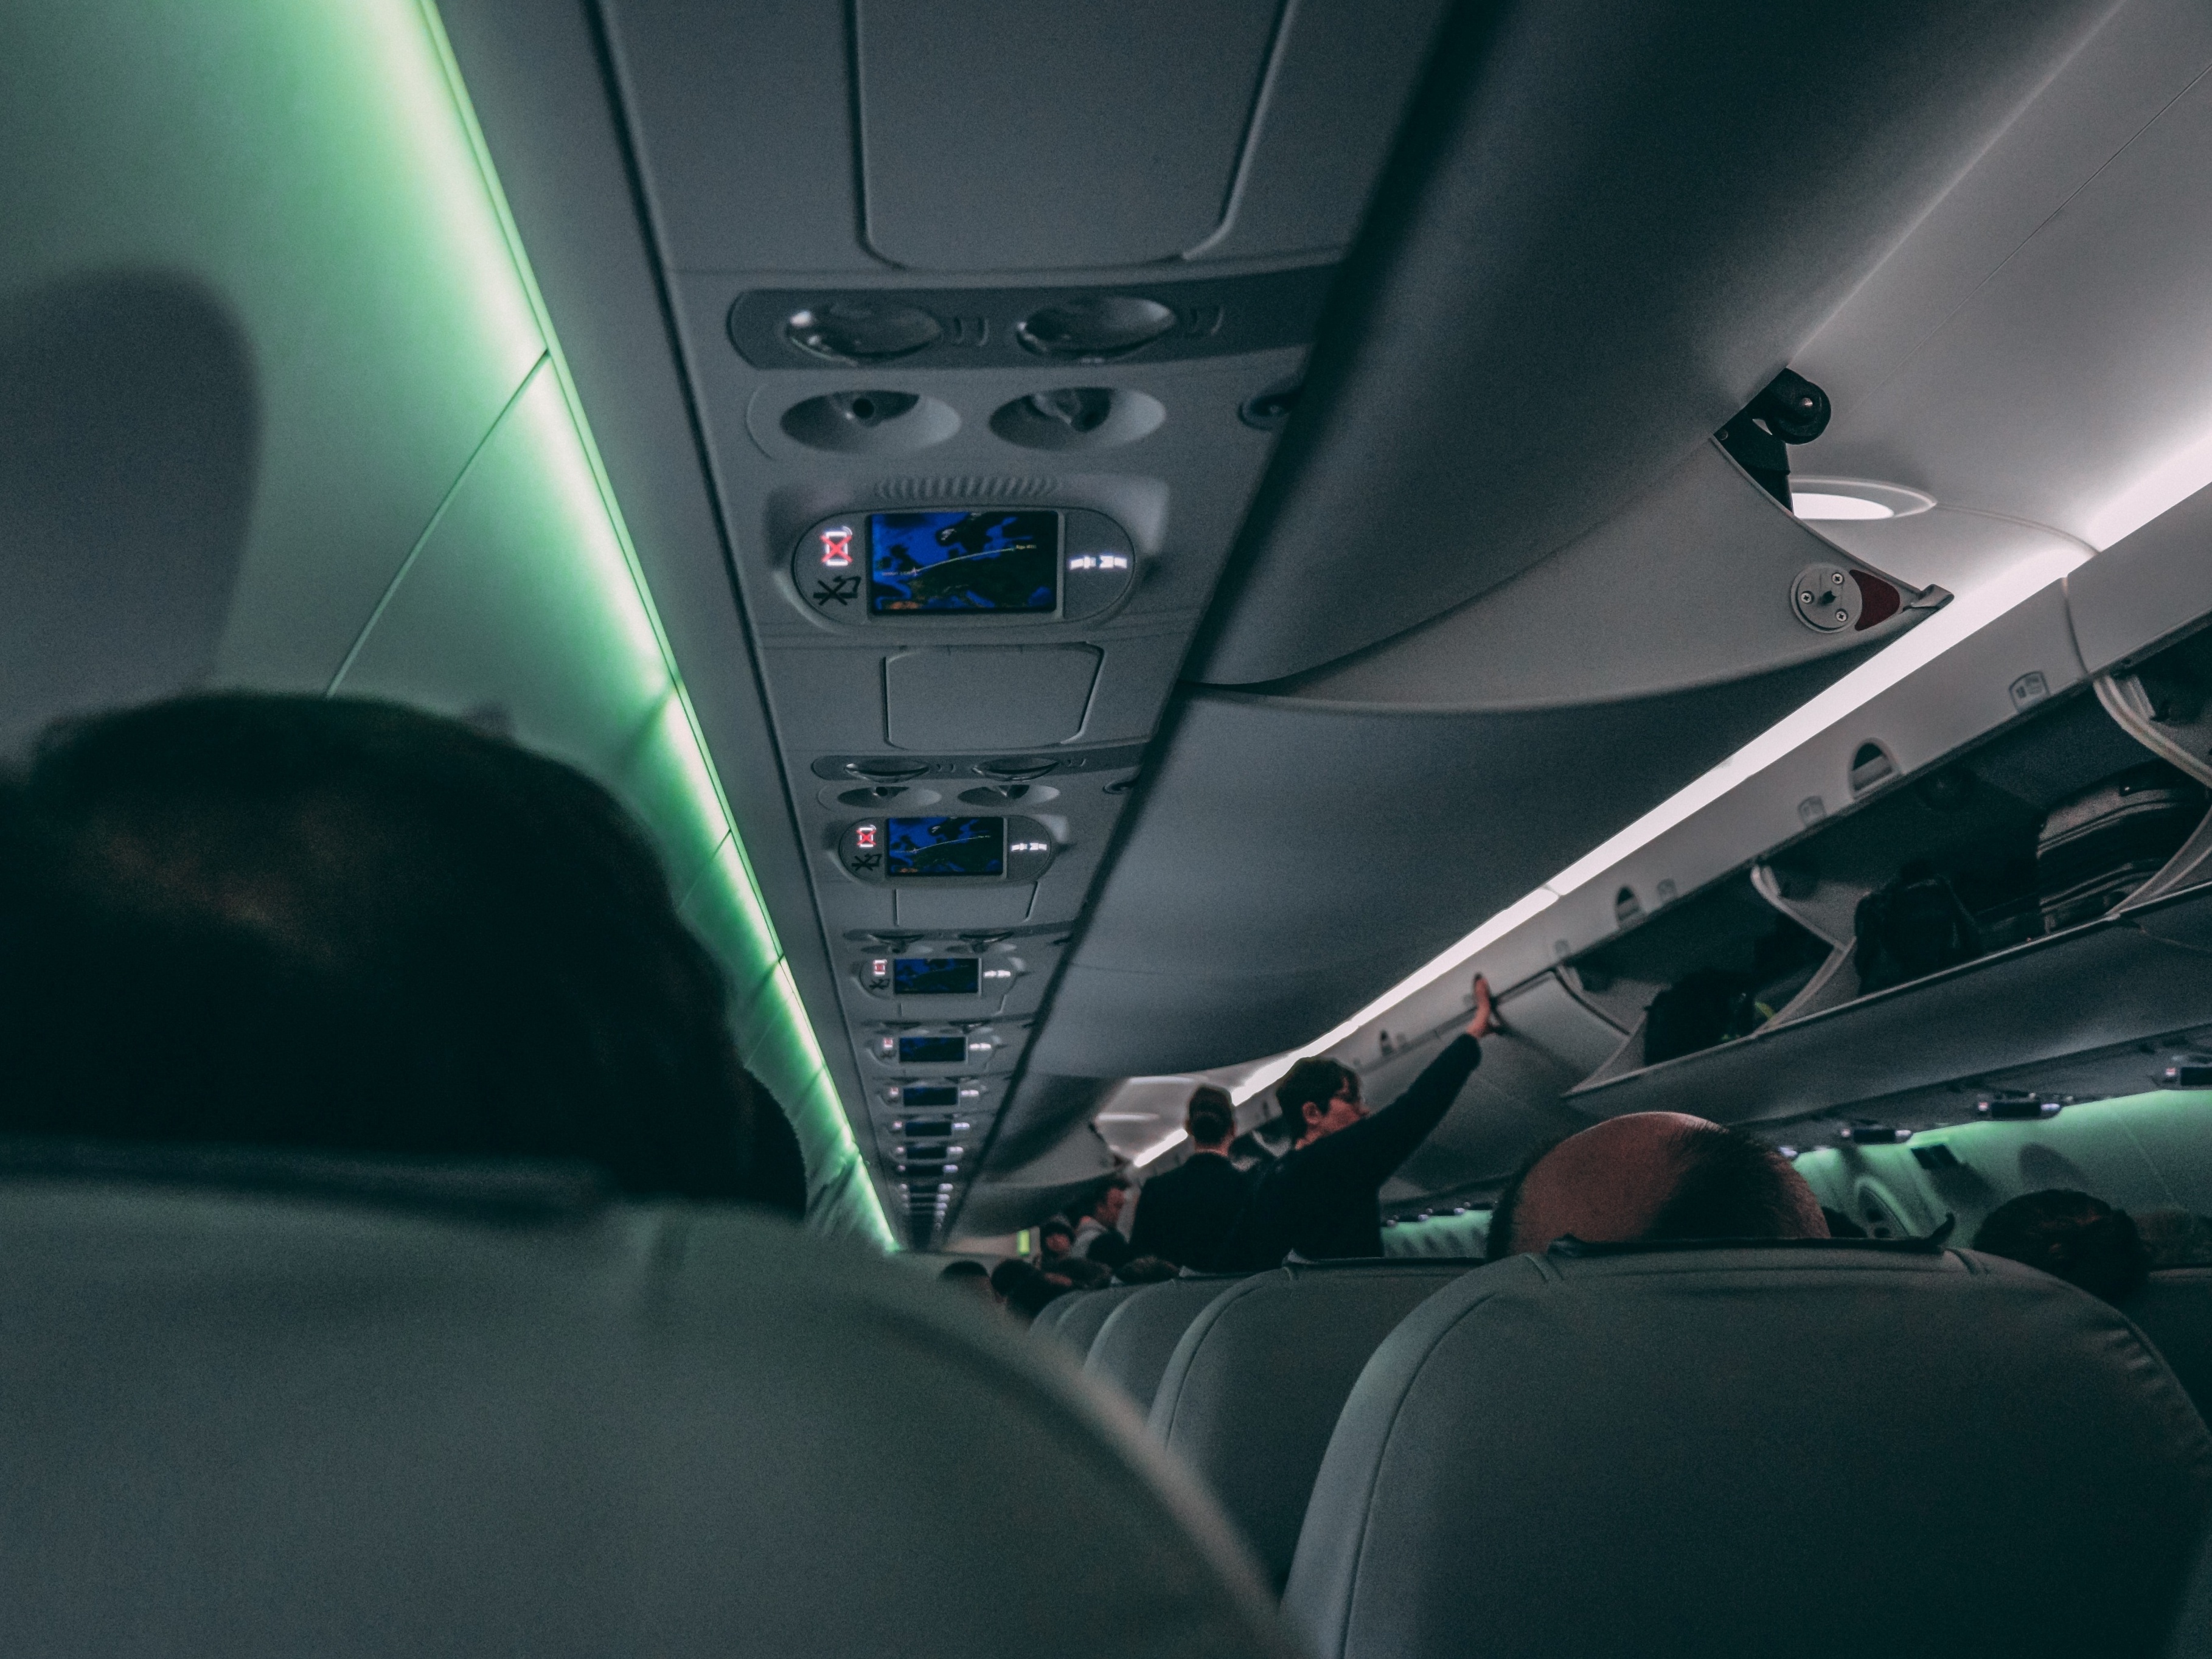 Comissário de bordo é obrigado a guardar malas de passageiros em aviões?